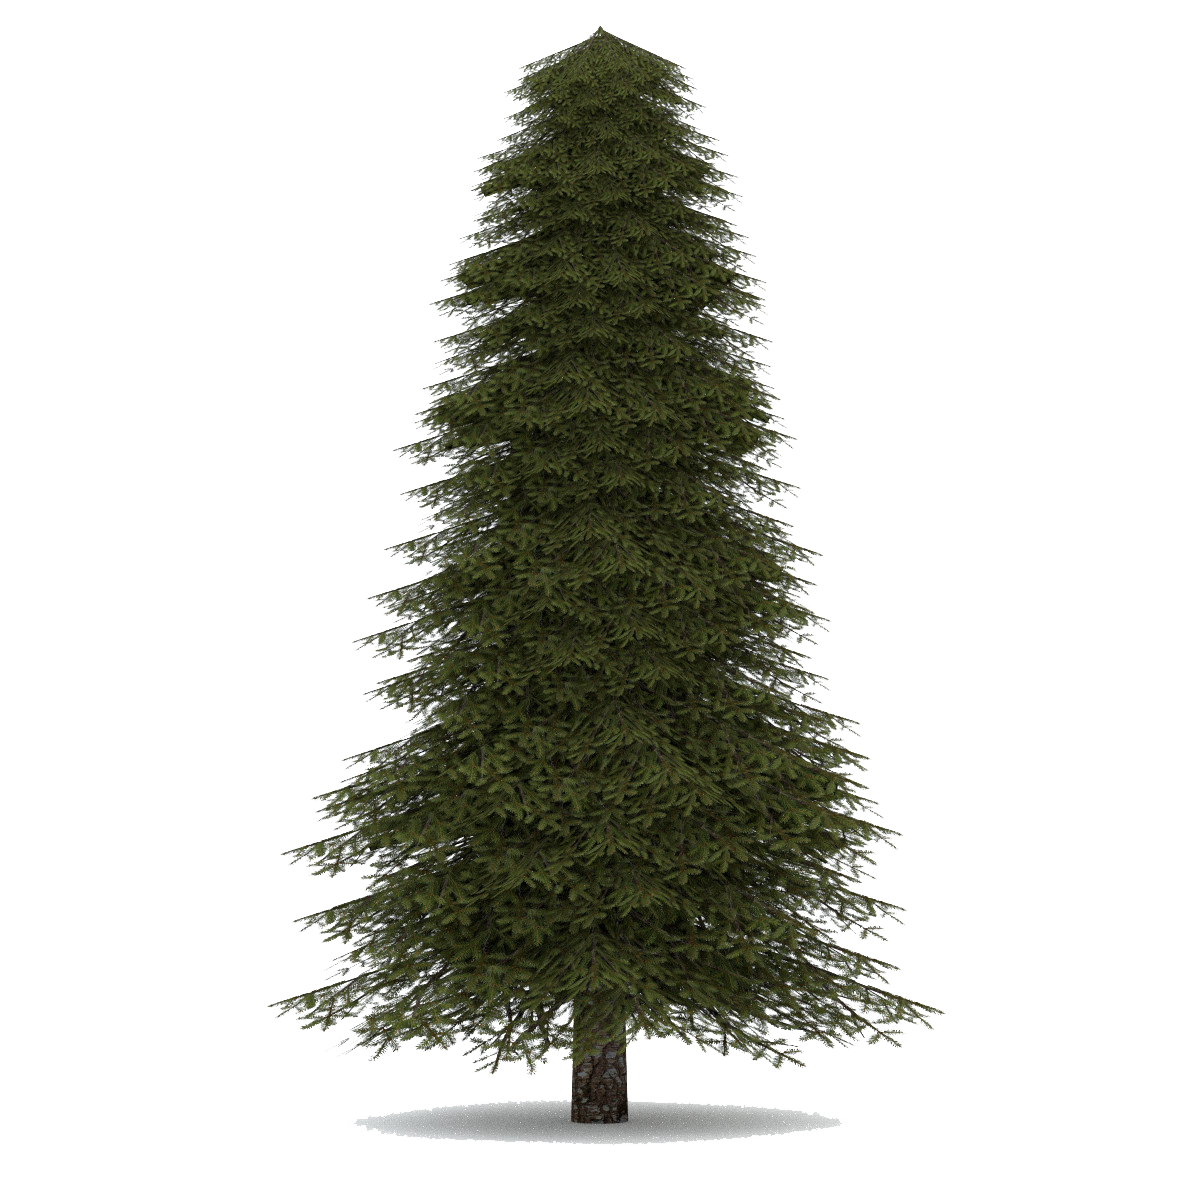 Елка Annapolis fir Tree. Ель высокая. Ель на белом фоне. Елка на прозрачном фоне. Tree елка